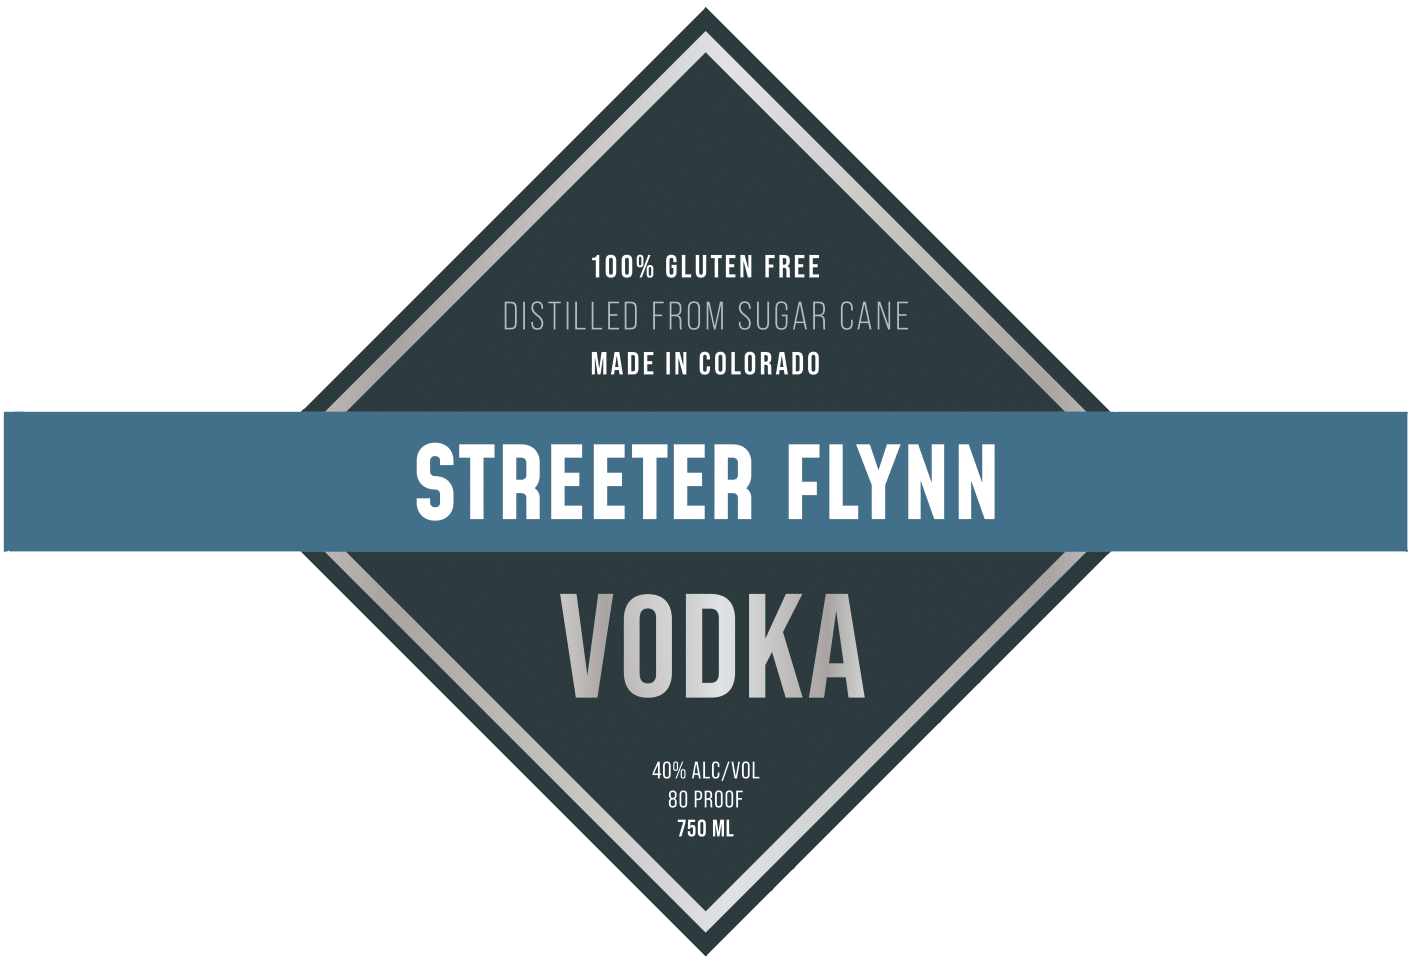 Streeter Flynn Vodka